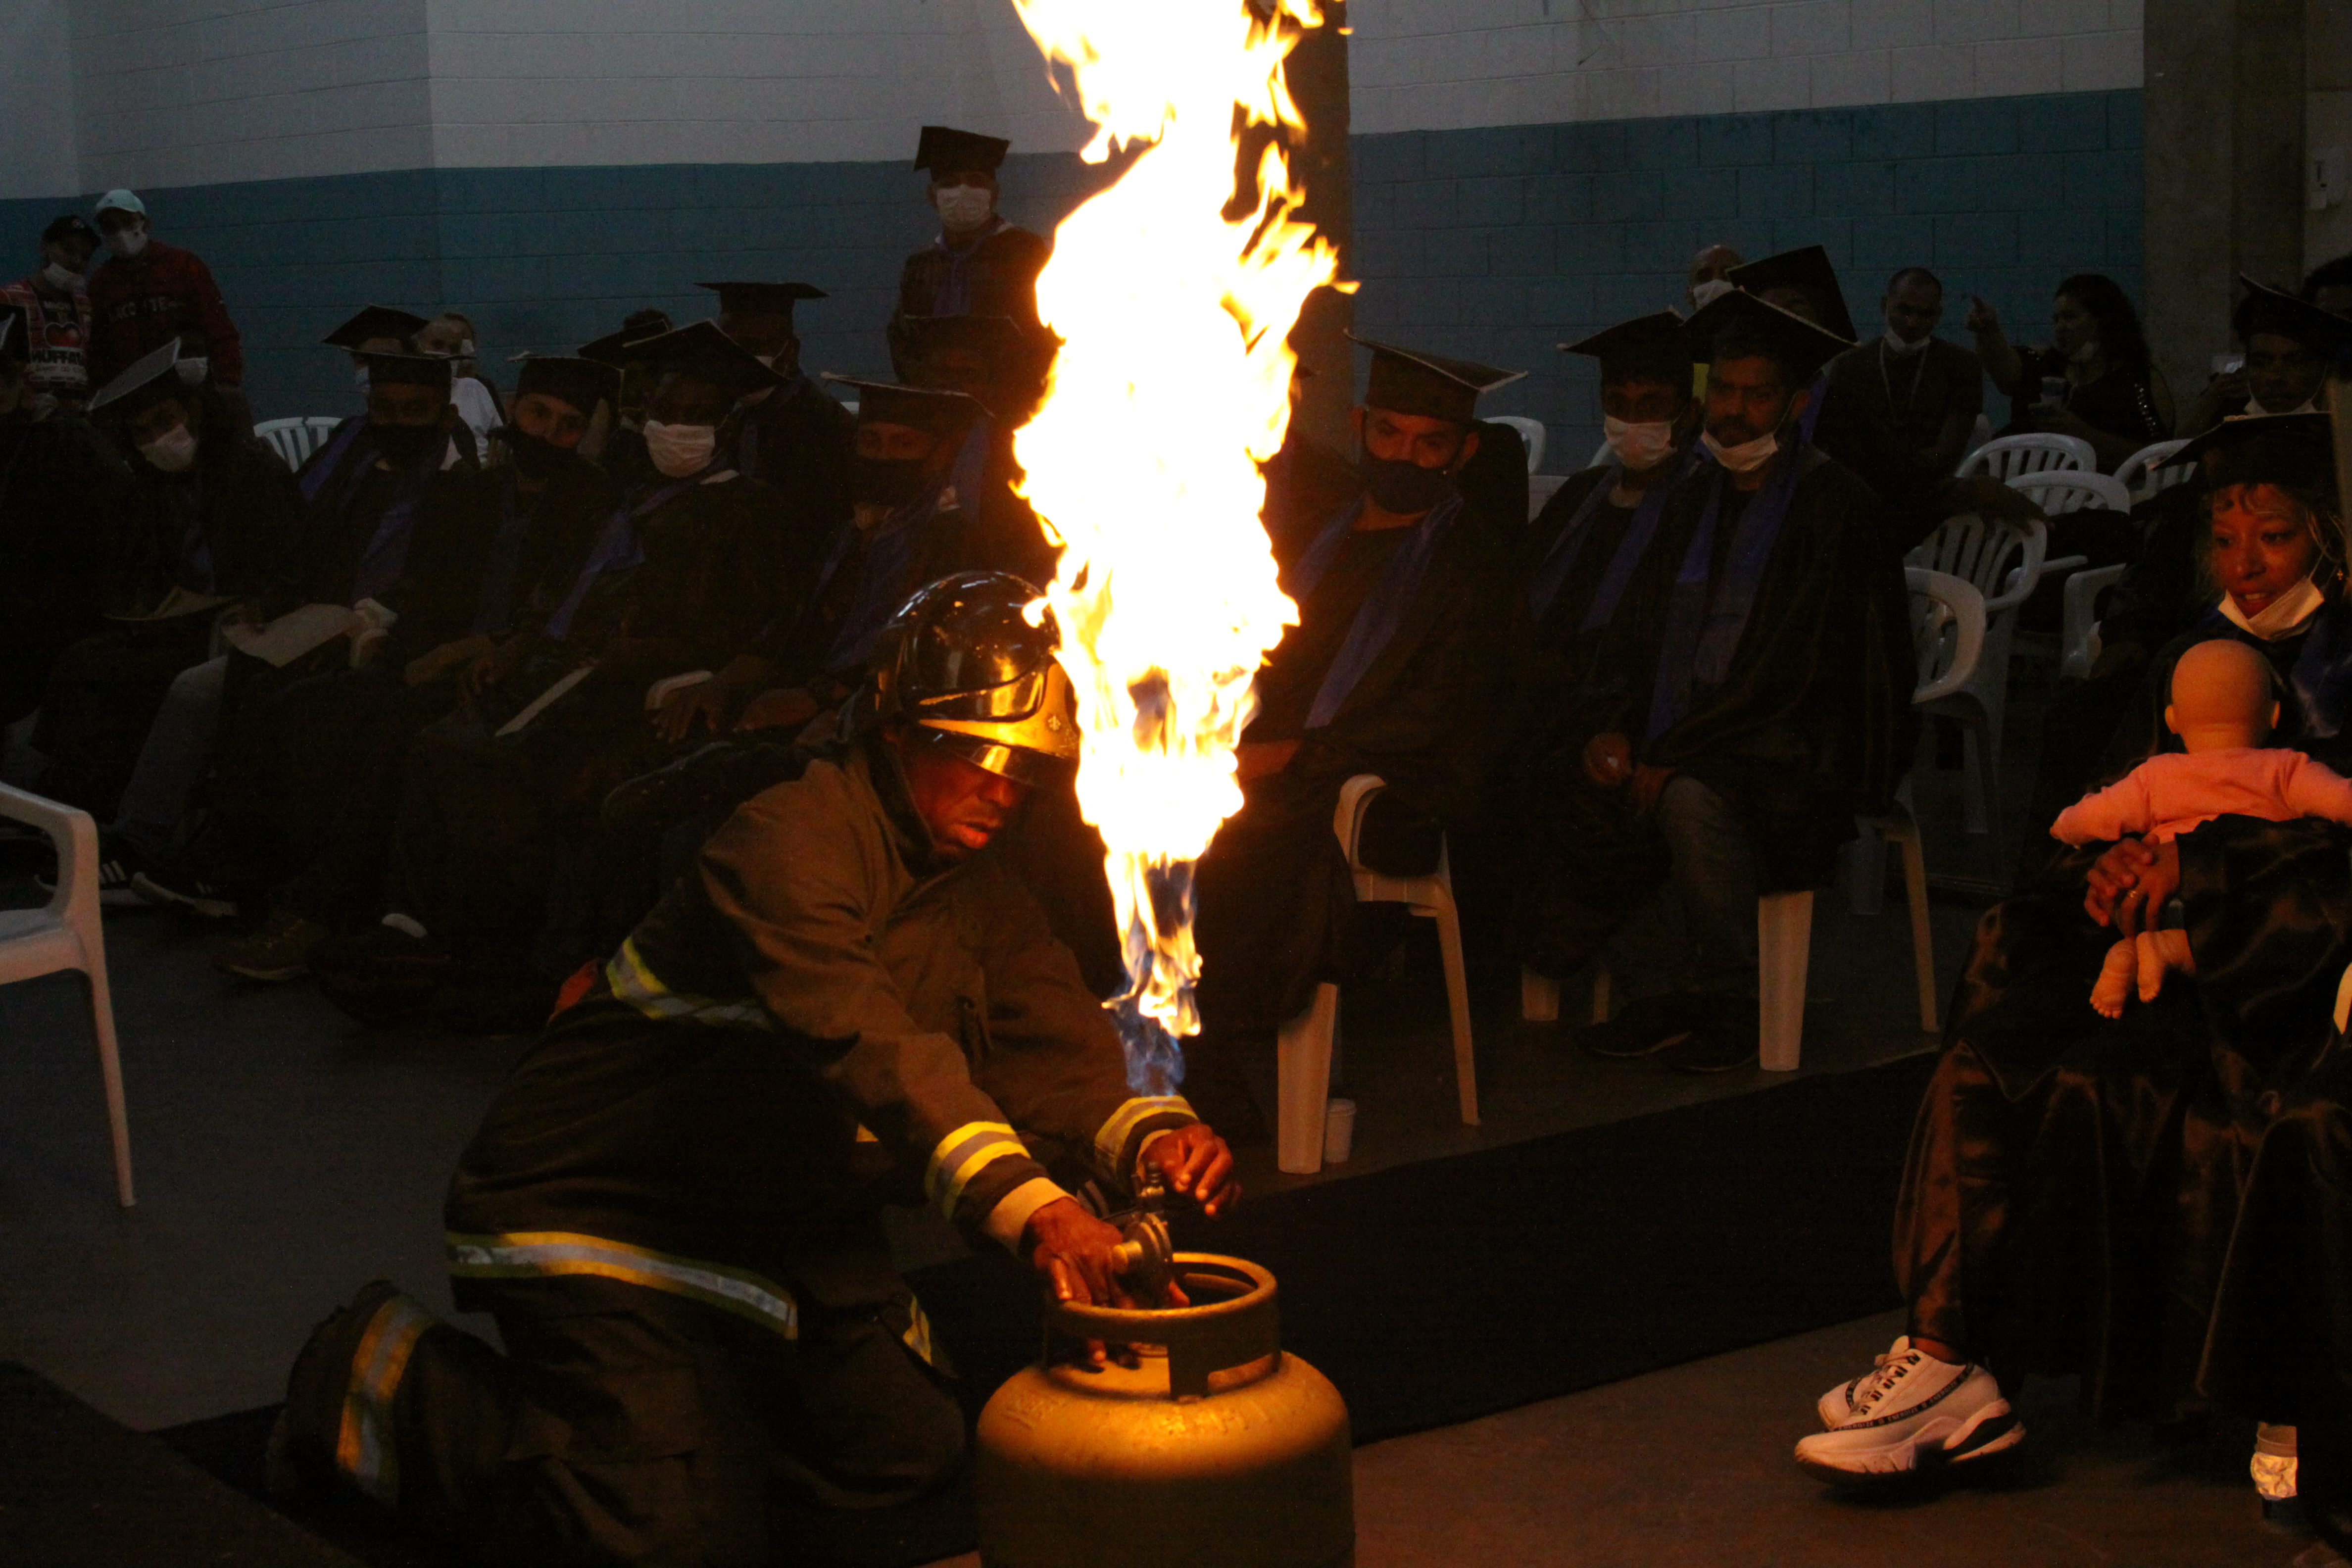  Encenação de Incêndio provocado por botijão de gás. Aluno do Curso Brigadista de Incêndio, devidamente equipado, apaga o fogo gerado em cerimônia de formatura do curso para uma demonstração.